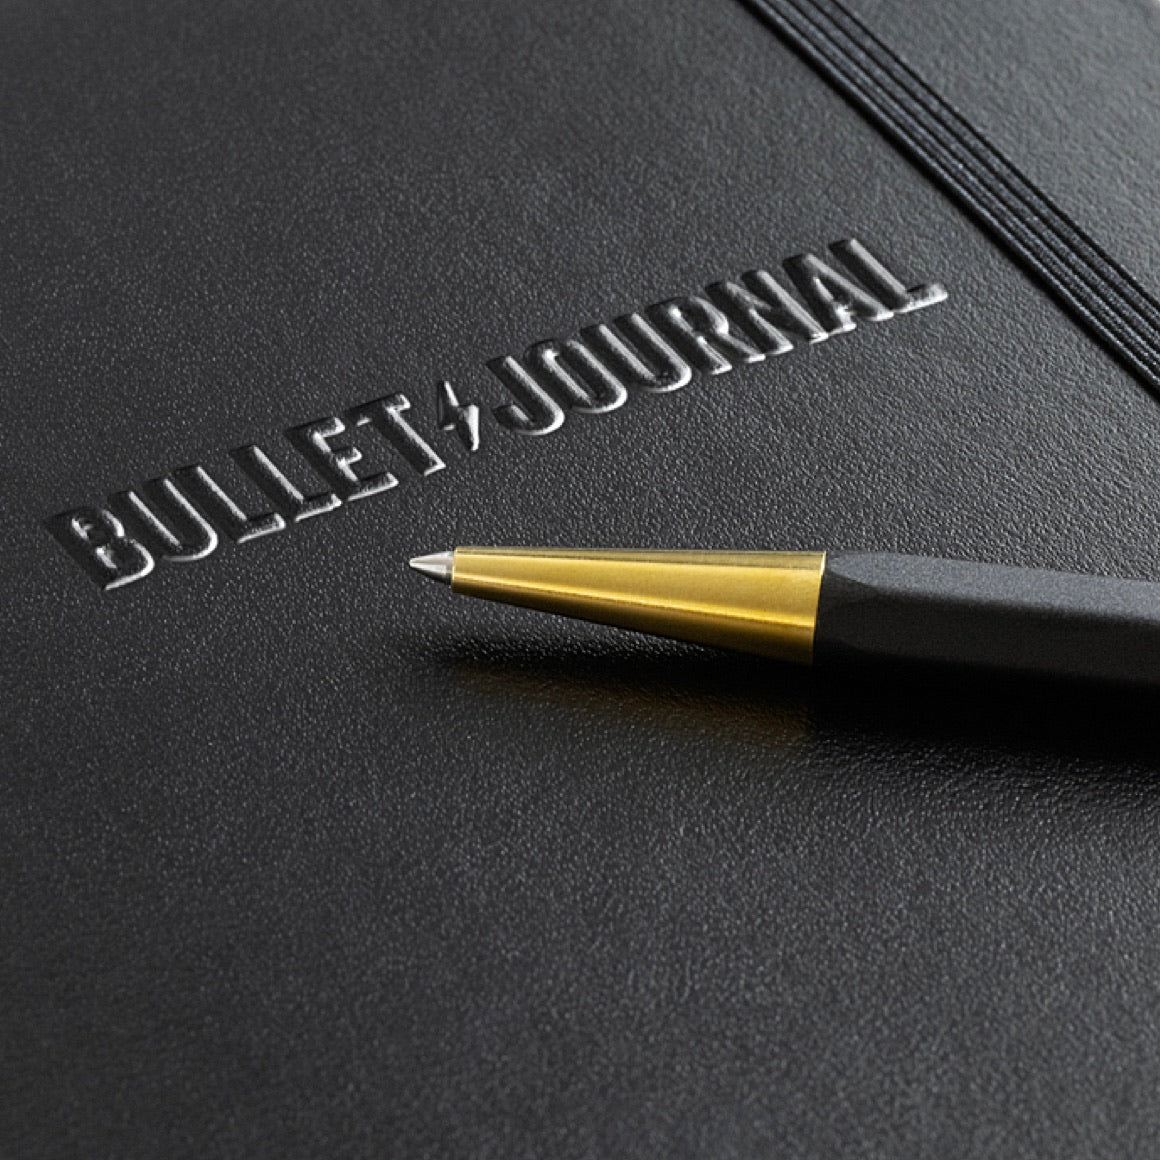 The Pen - Bullet Journal